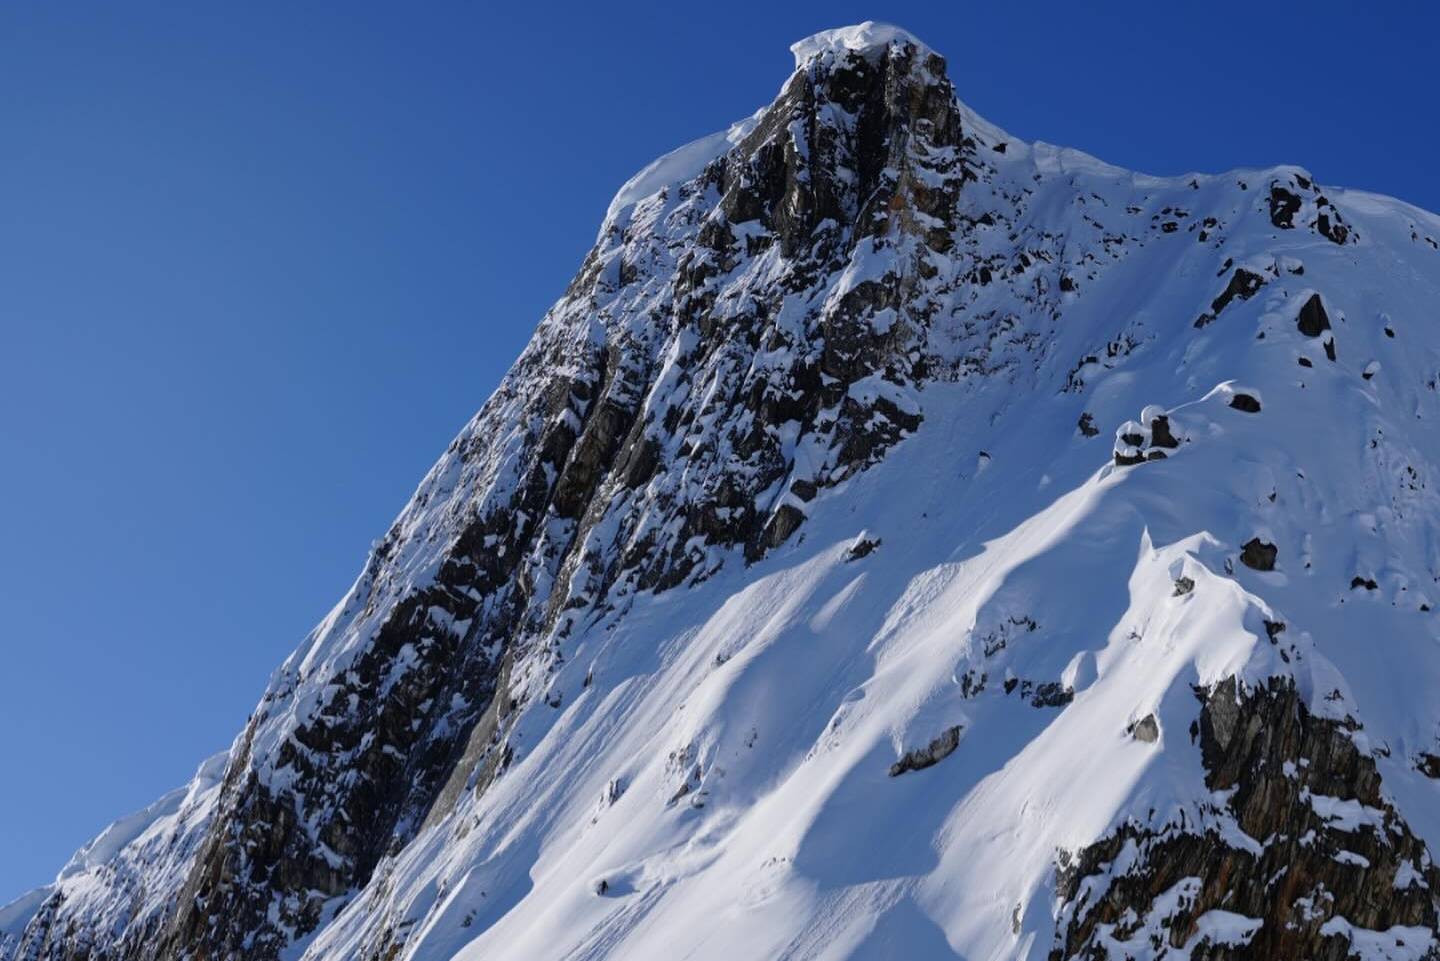 Arc'teryx 呈现在雪山之上的视觉之旅